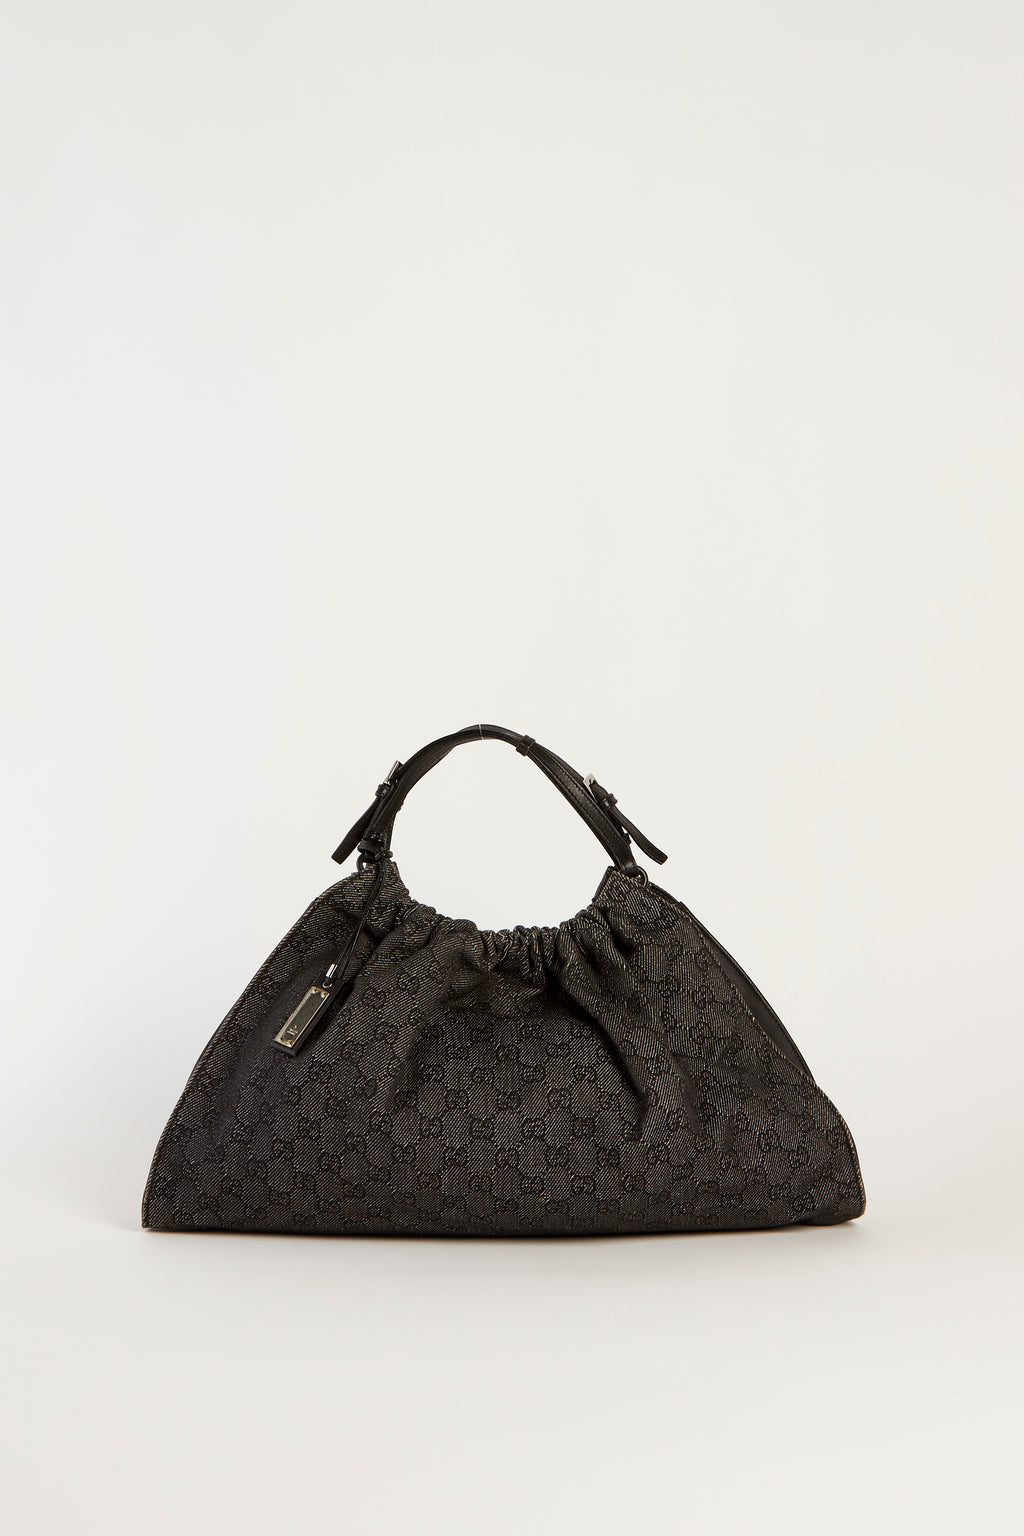 Vintage Gucci Classic GG Monogram Gathered Shoulder Bag